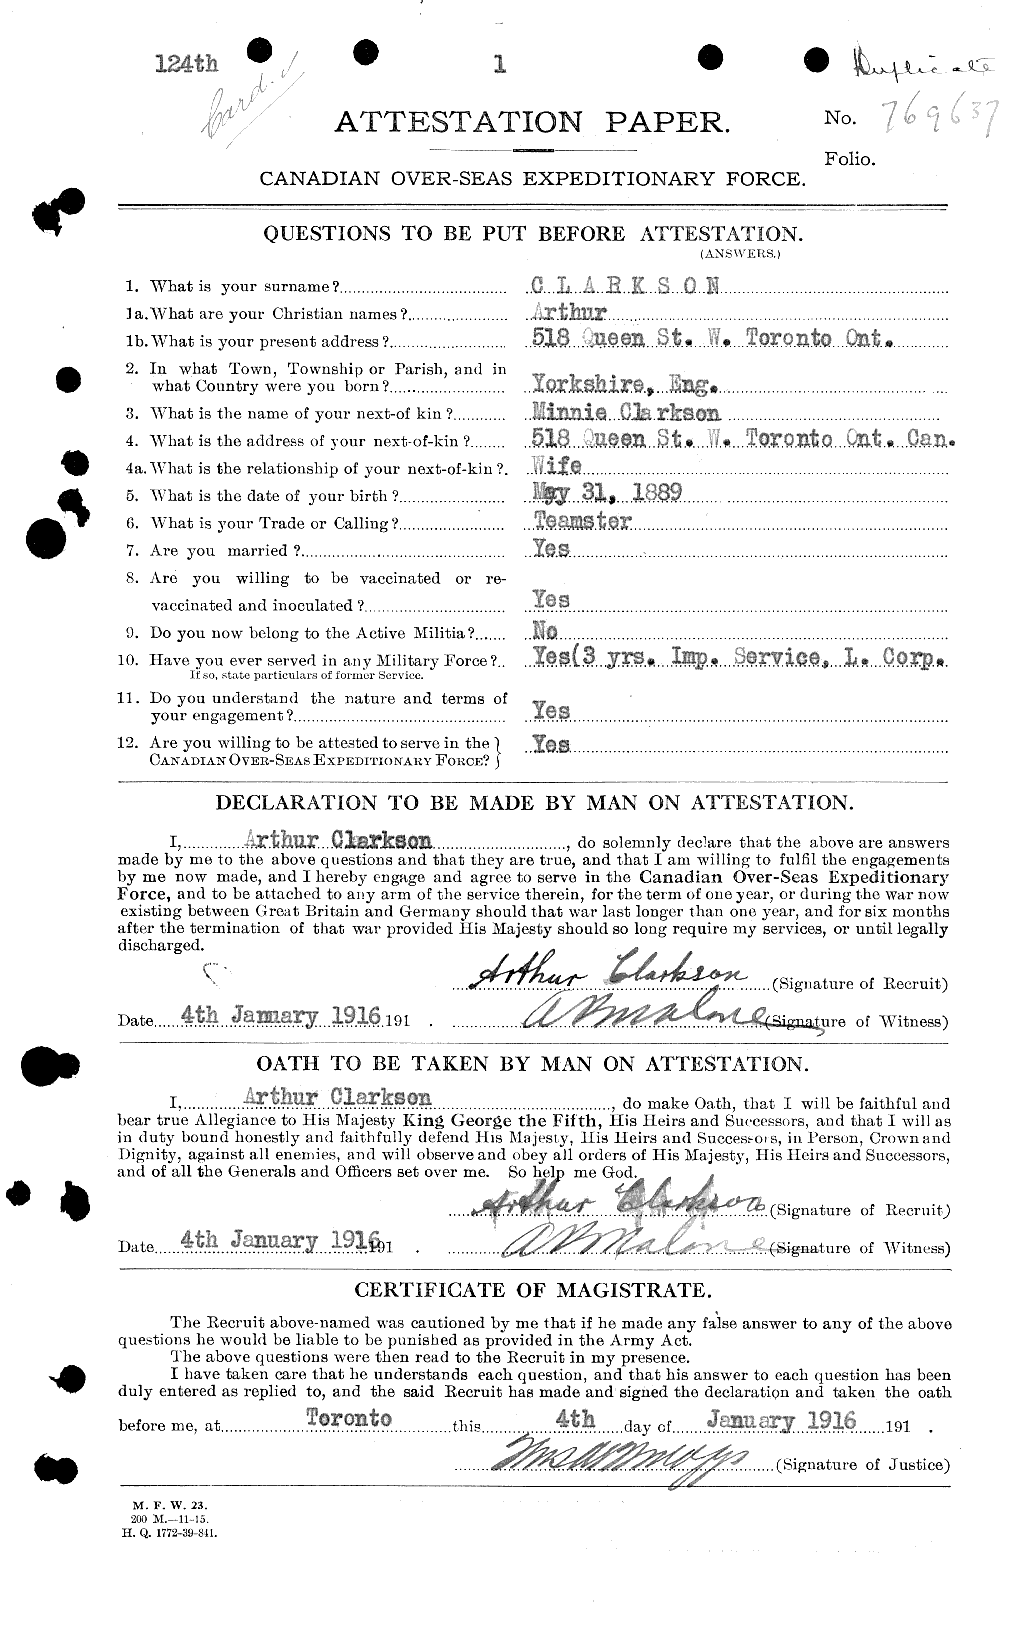 Dossiers du Personnel de la Première Guerre mondiale - CEC 023616a